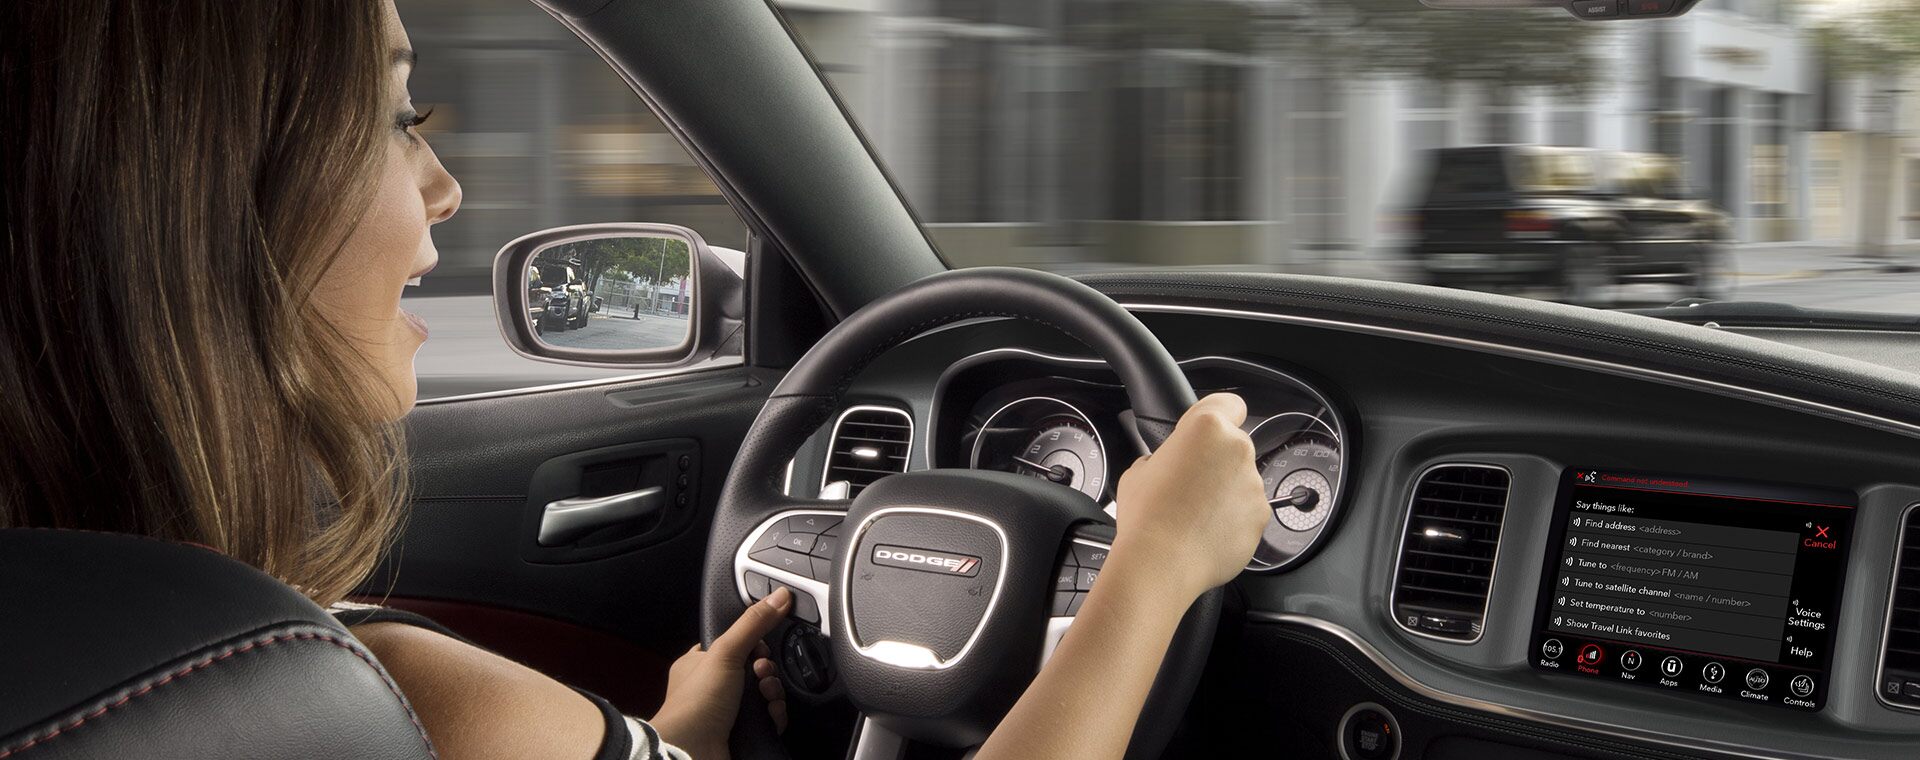 El conductor de un Dodge Charger 2021 mira la carretera mientras presiona uno de los botones en los controles montados en el volante.